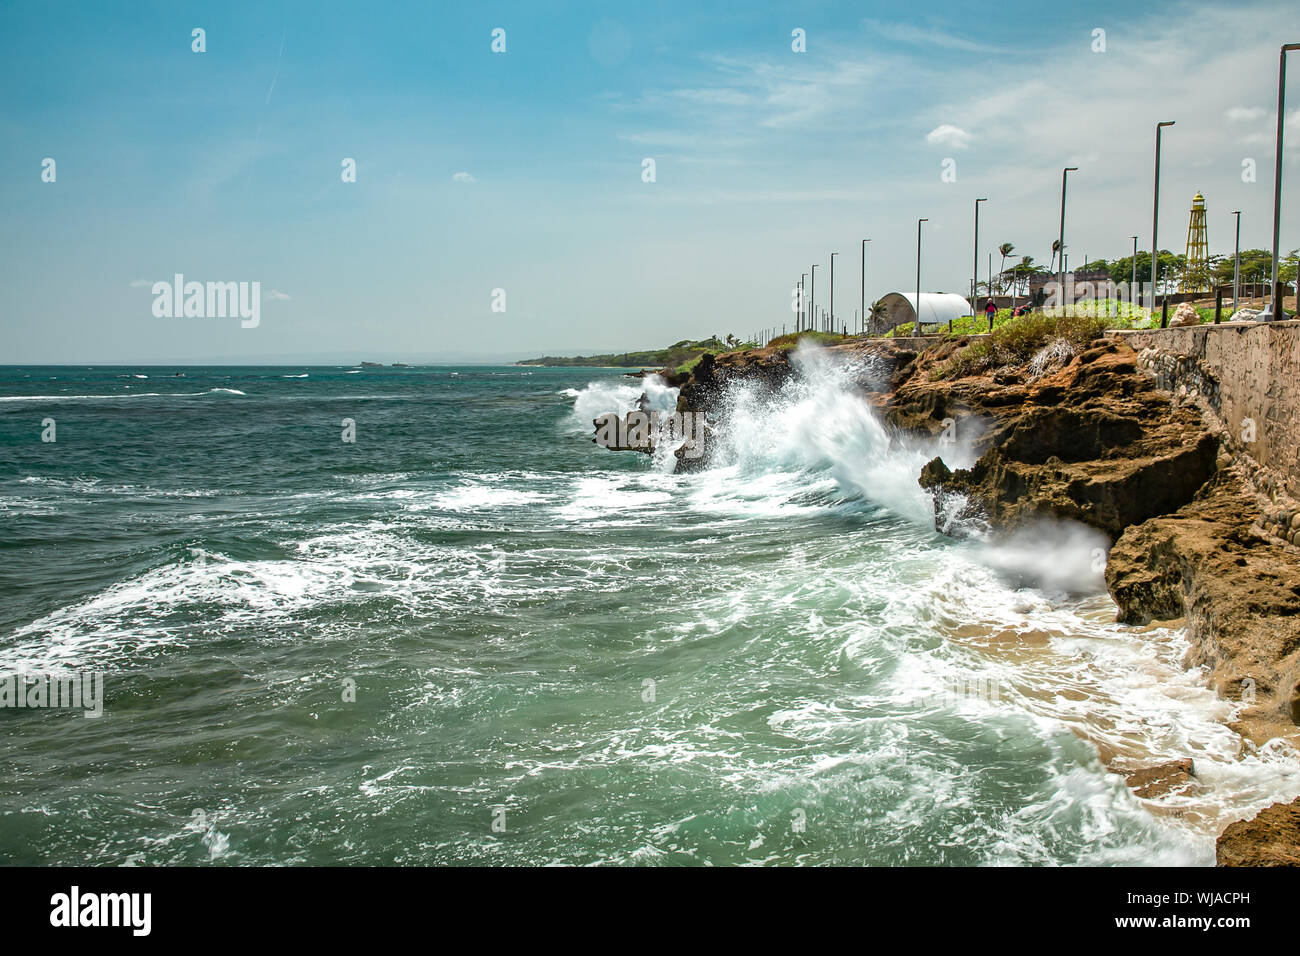 Les vagues écumeuses de l'océan, des éclaboussures et des pierres sur un quai, Puerto Plata, République dominicaine Banque D'Images